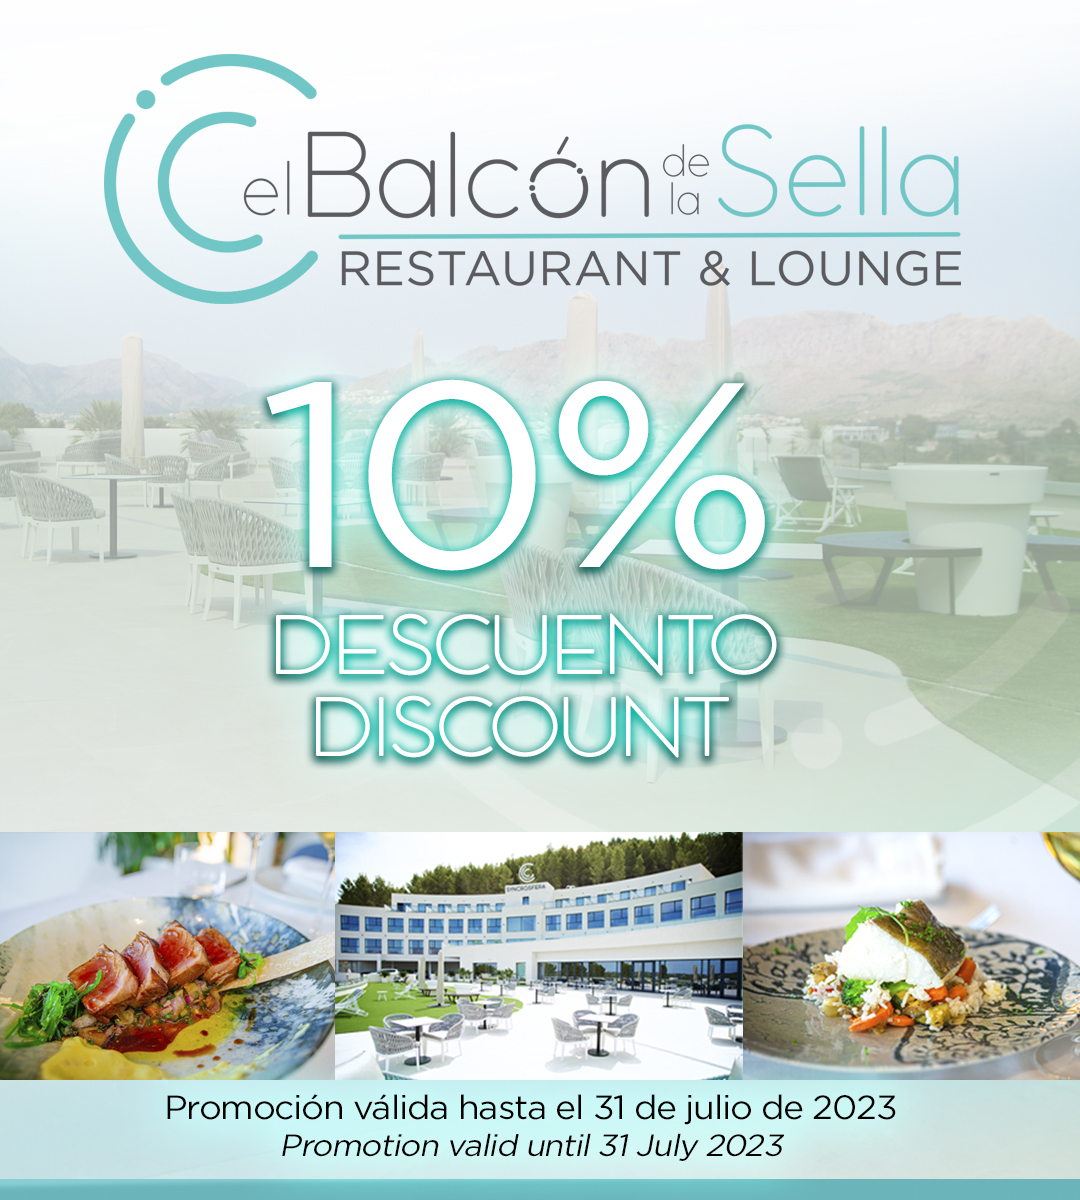 Gastronomic delights at El Balcón de la Sella with 10% off